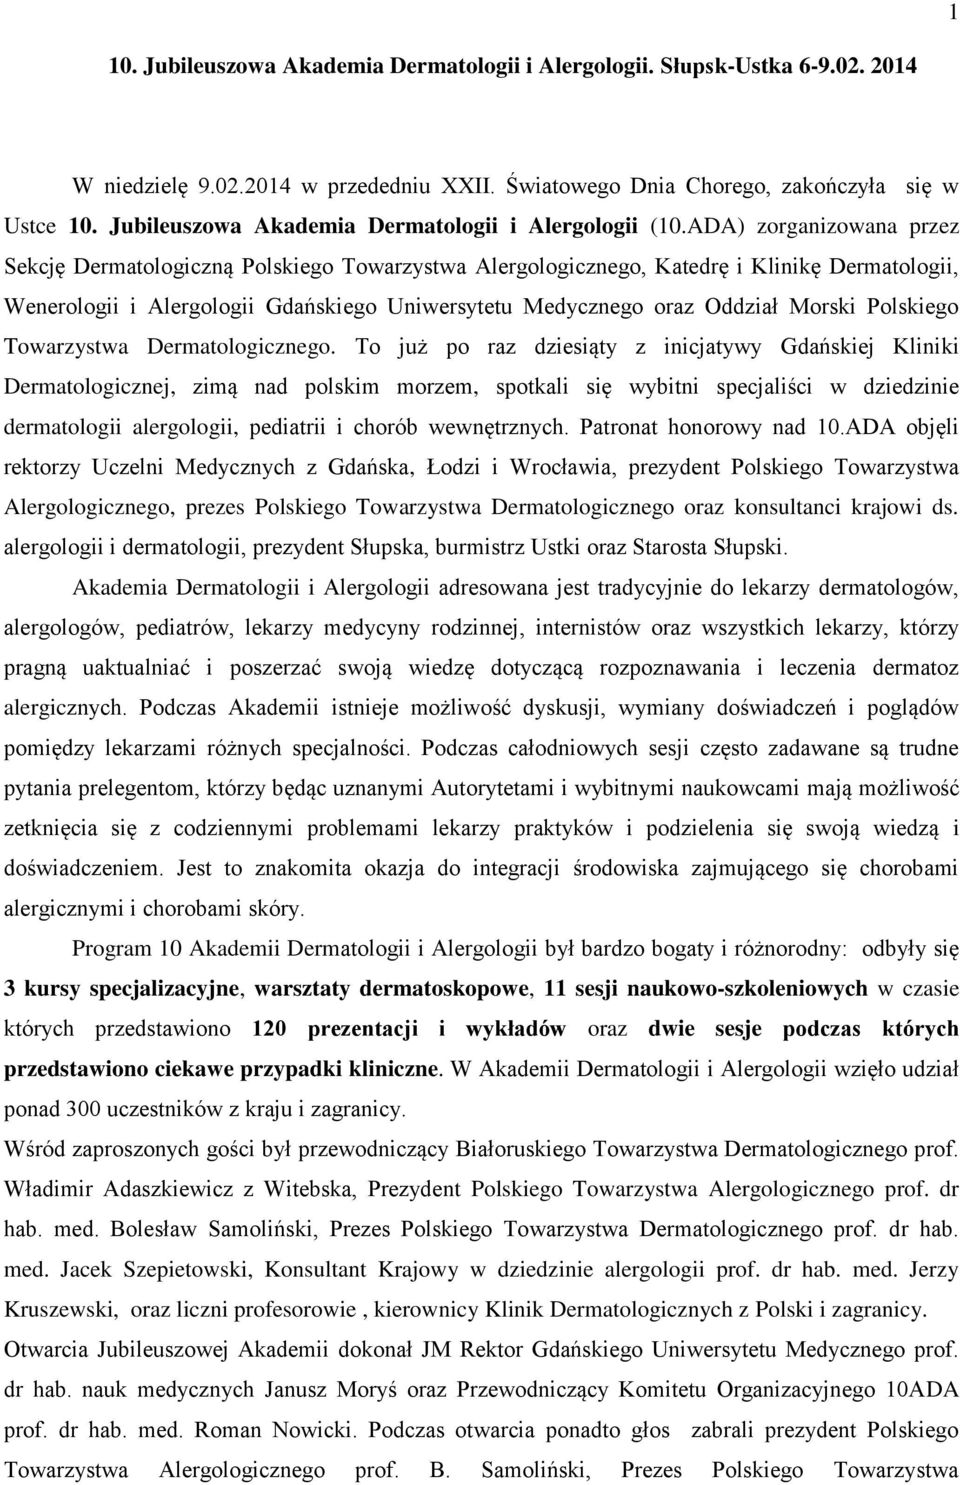 ADA) zorganizowana przez Sekcję Dermatologiczną Polskiego Towarzystwa Alergologicznego, Katedrę i Klinikę Dermatologii, Wenerologii i Alergologii Gdańskiego Uniwersytetu Medycznego oraz Oddział